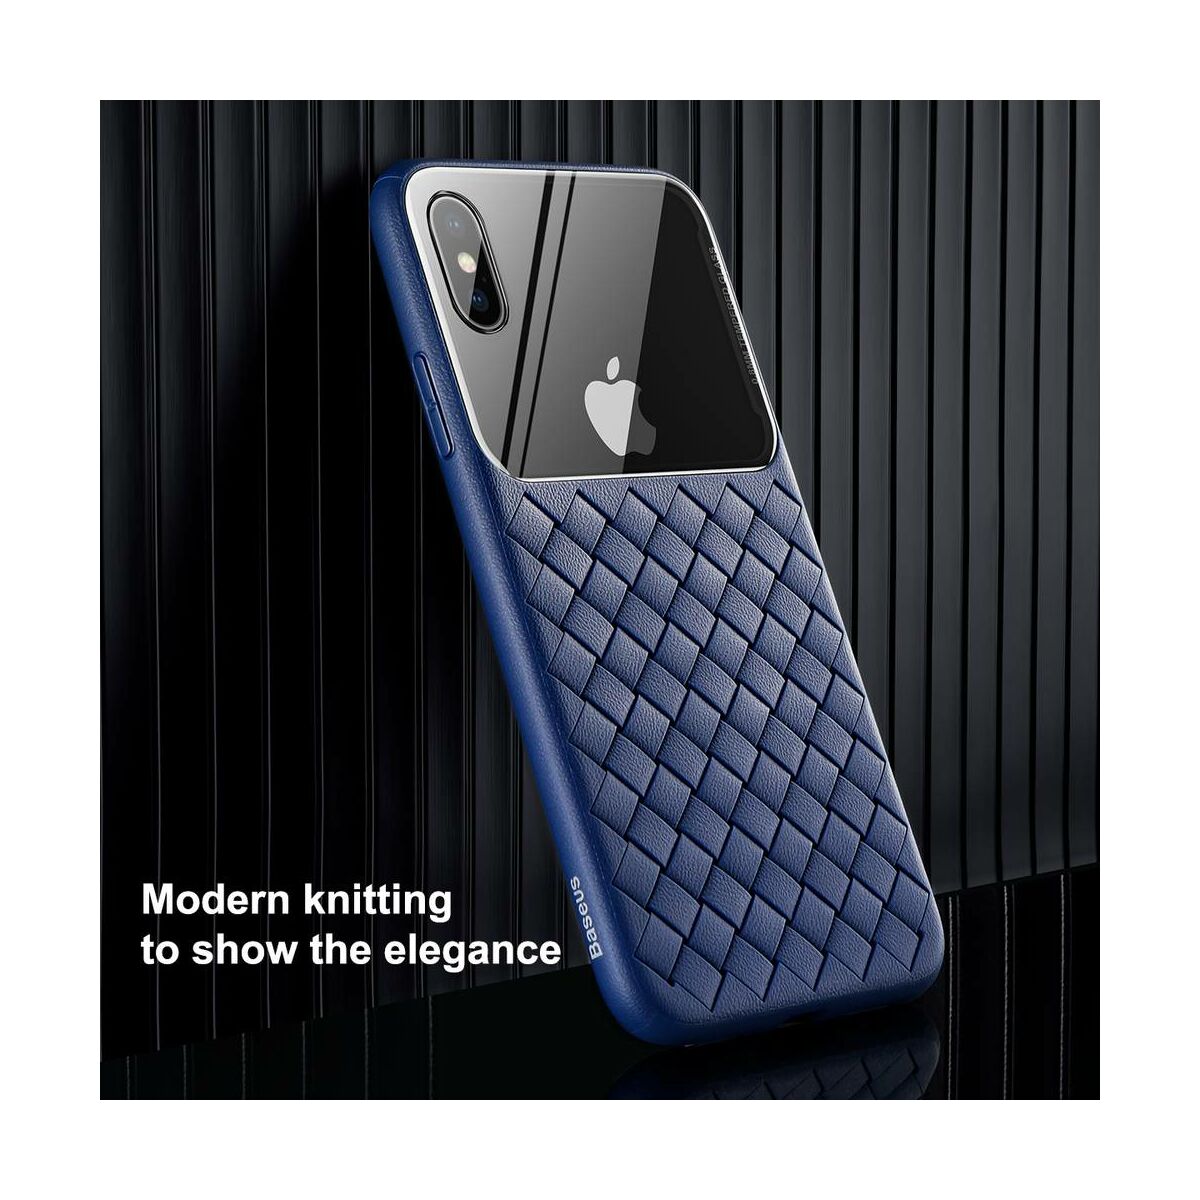 Kép 2/8 - Baseus iPhone XS üveg & tok, BV Weaving, kék (WIAPIPH58-BL03)